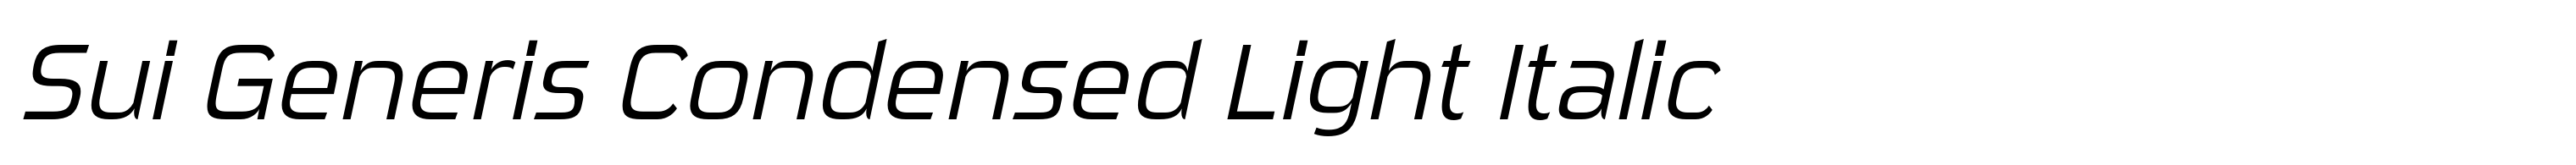 Sui Generis Condensed Light Italic